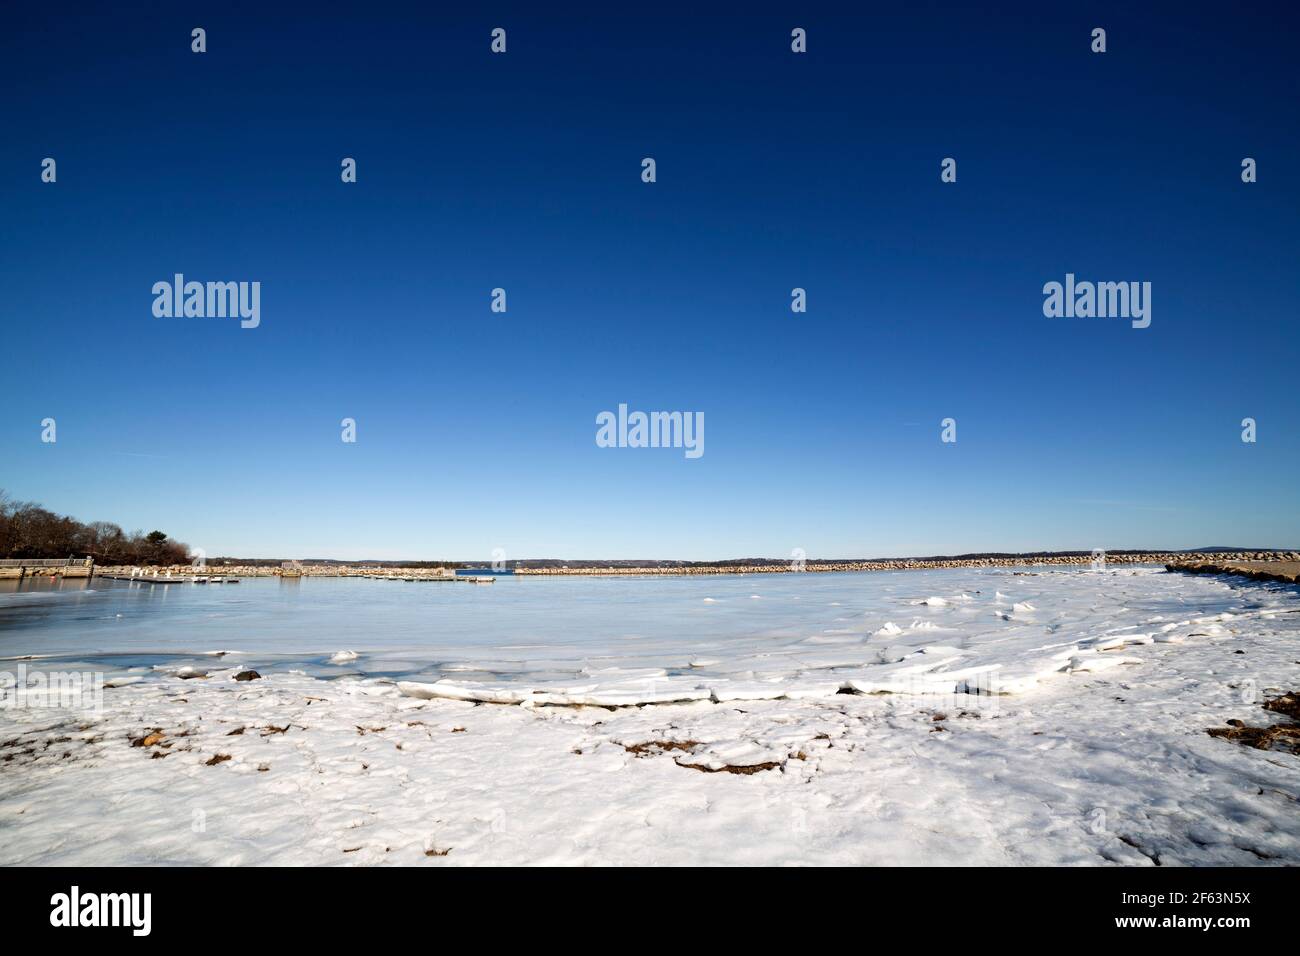 Calotte glaciaire au bord du rivage à Rafuses Cove, en Nouvelle-Écosse, au Canada. Le ciel est bleu clair au-dessus de la côte. Banque D'Images